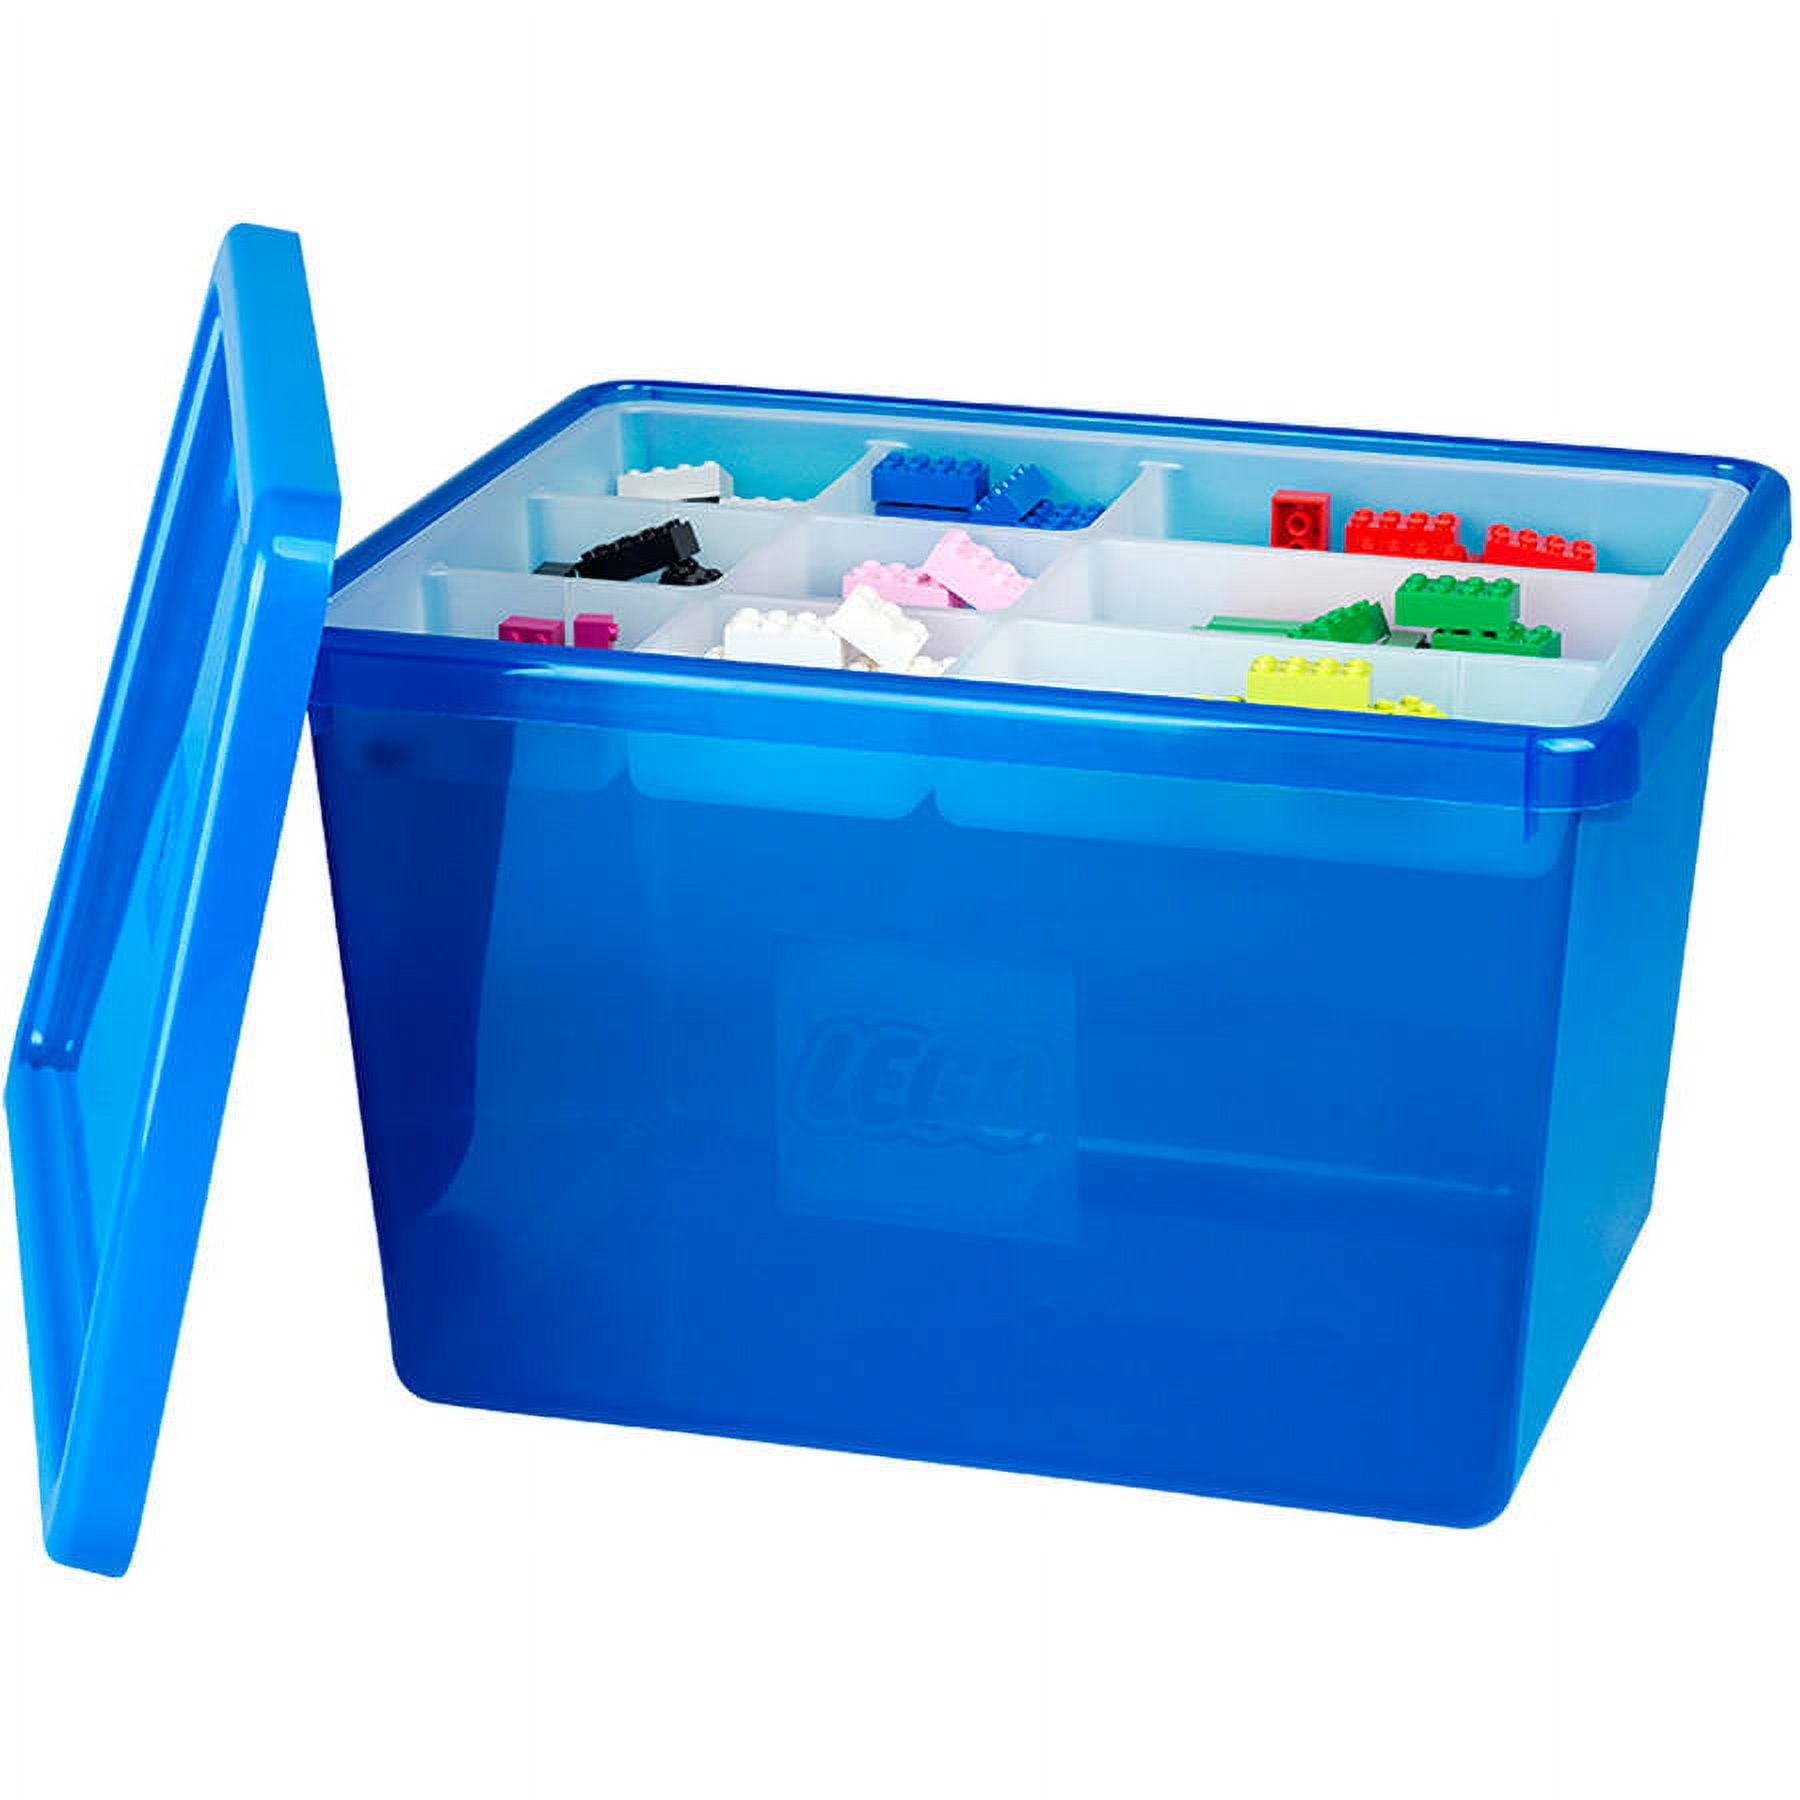 Lego Storage Box Compartments  Lego Plastic Storage Box Large - Large  Capacity - Aliexpress